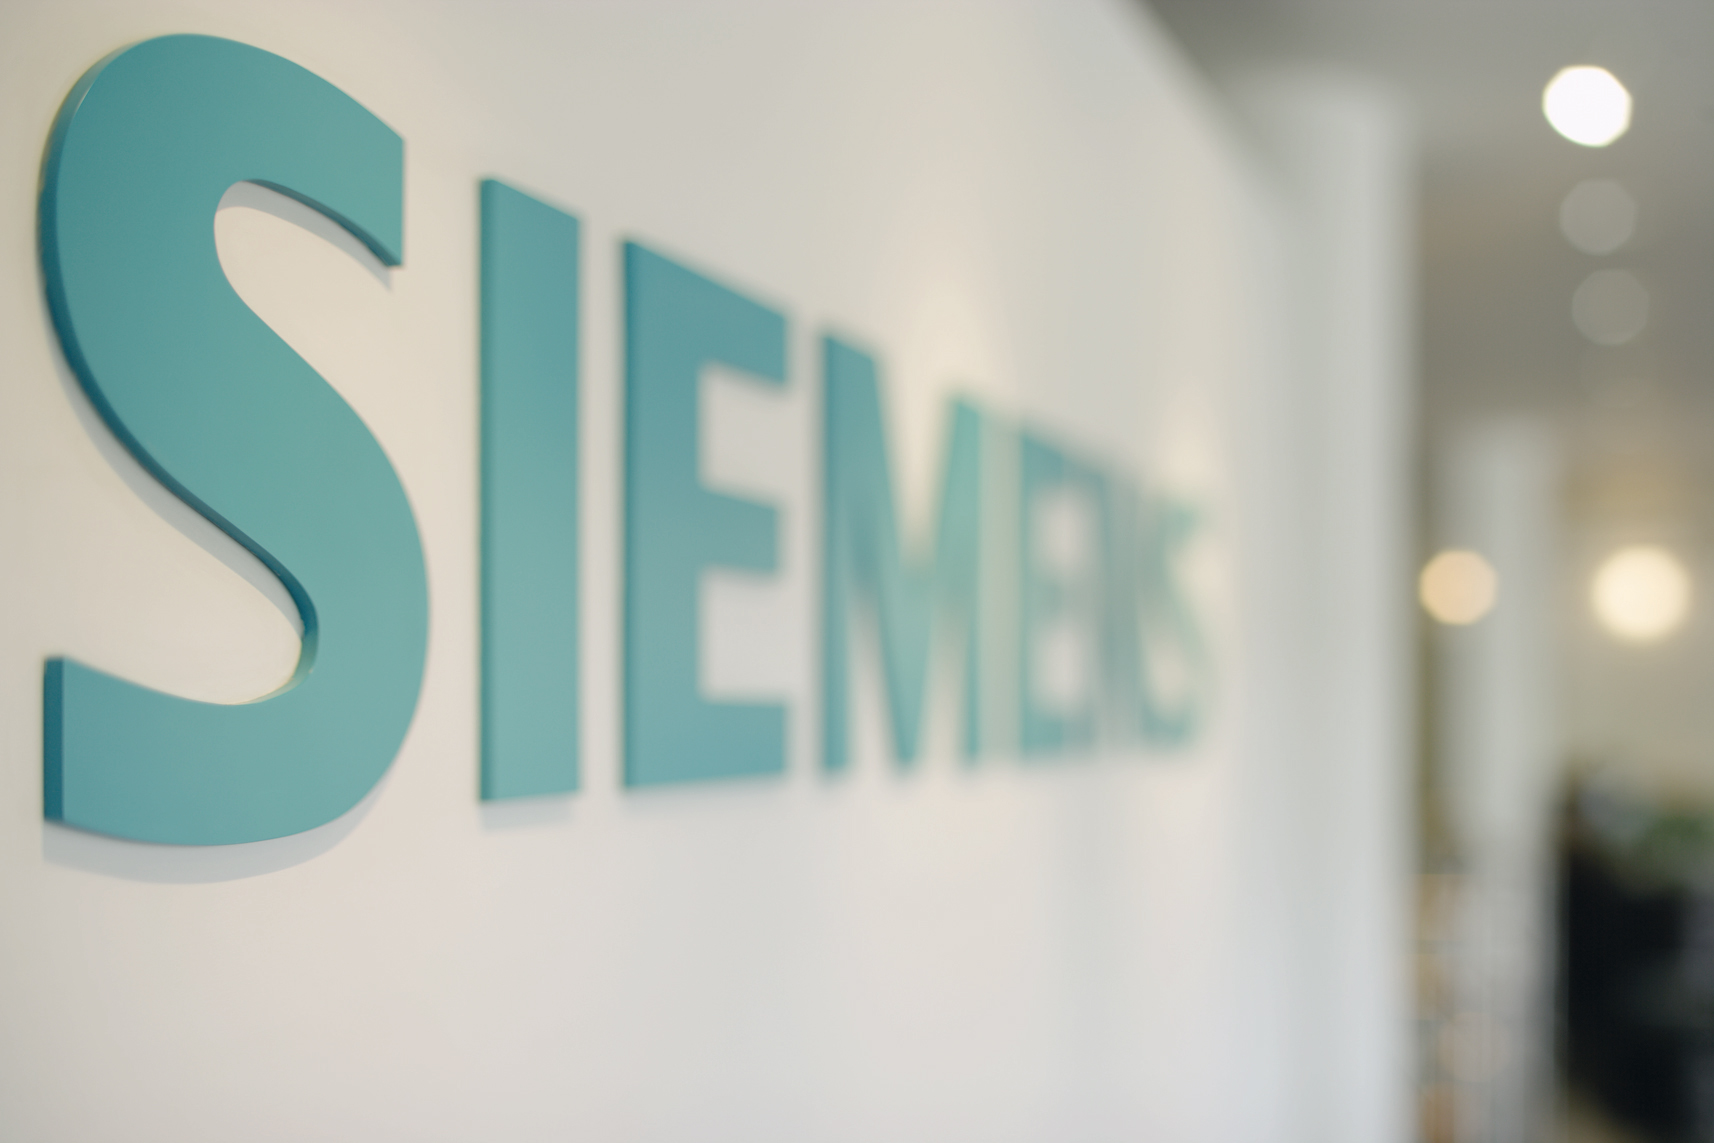 Siemens image logo qapa news